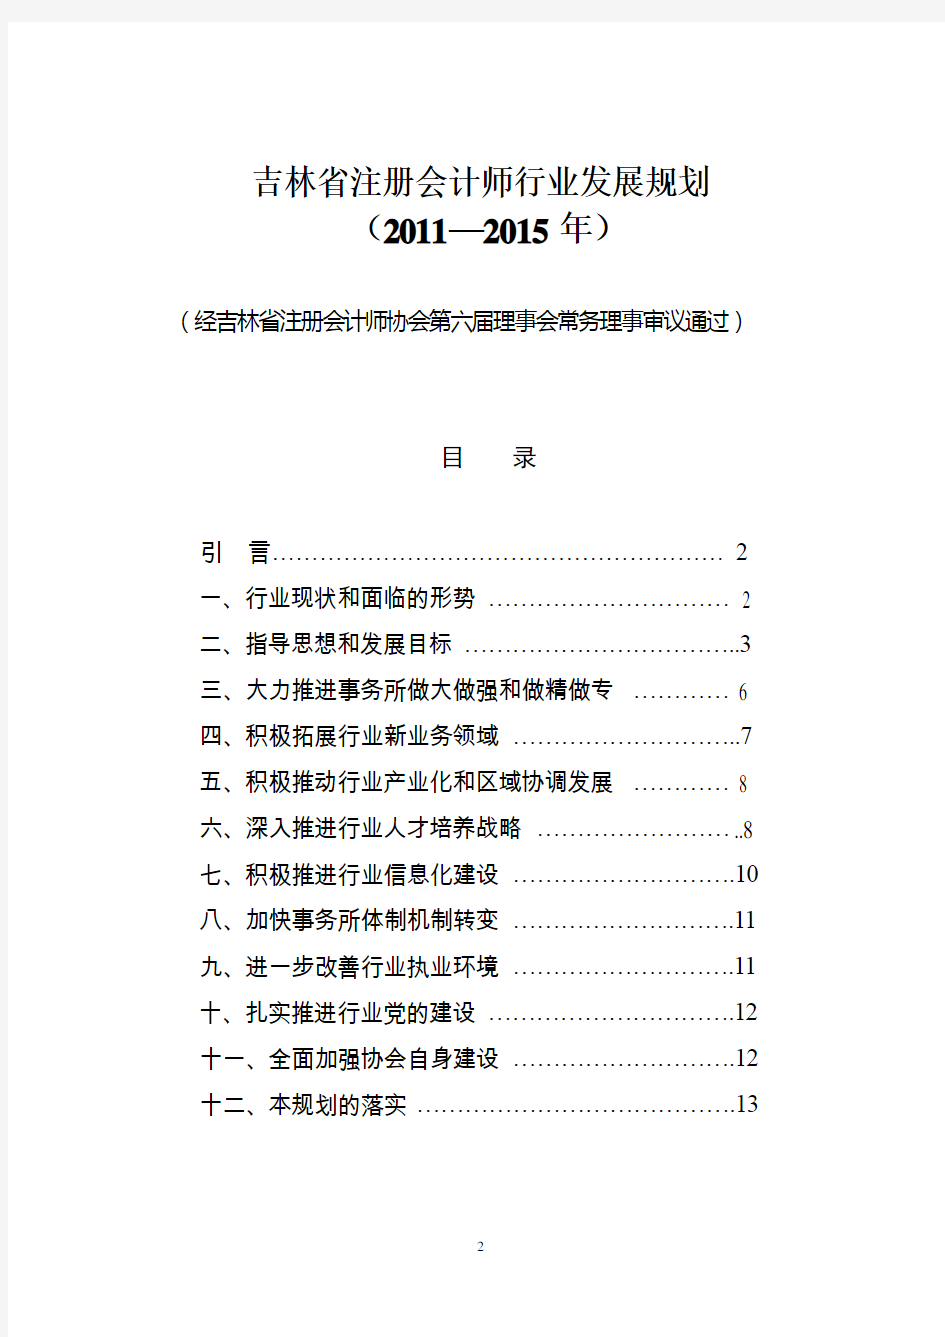 吉林省注册会计师行业发展规划